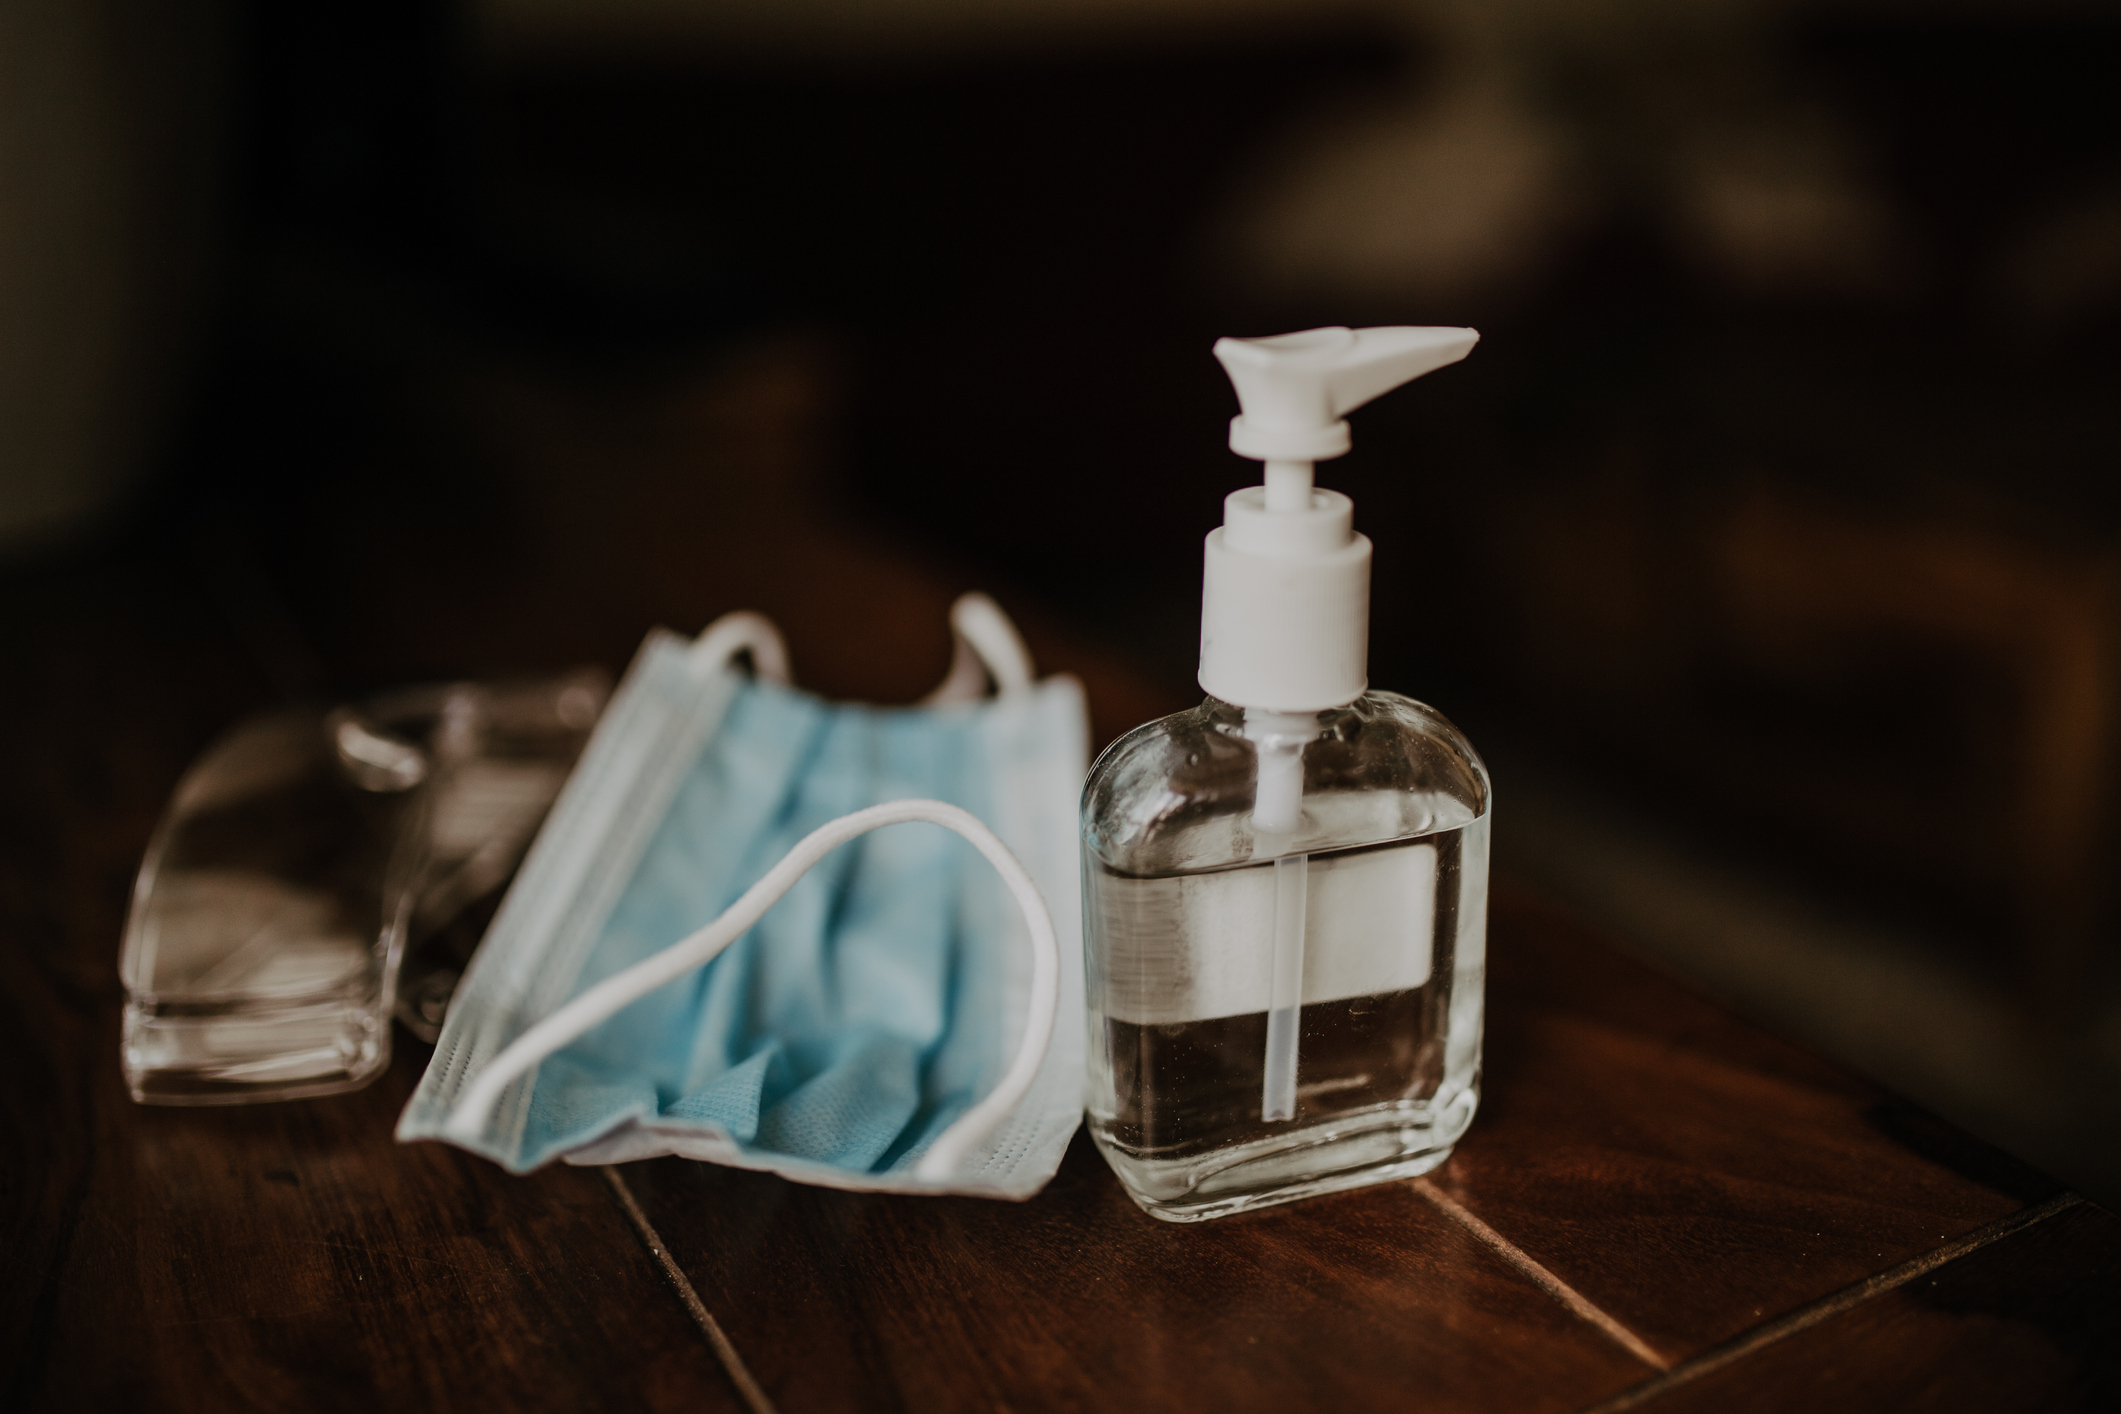 Hand sanitizer gel higiene against viruses